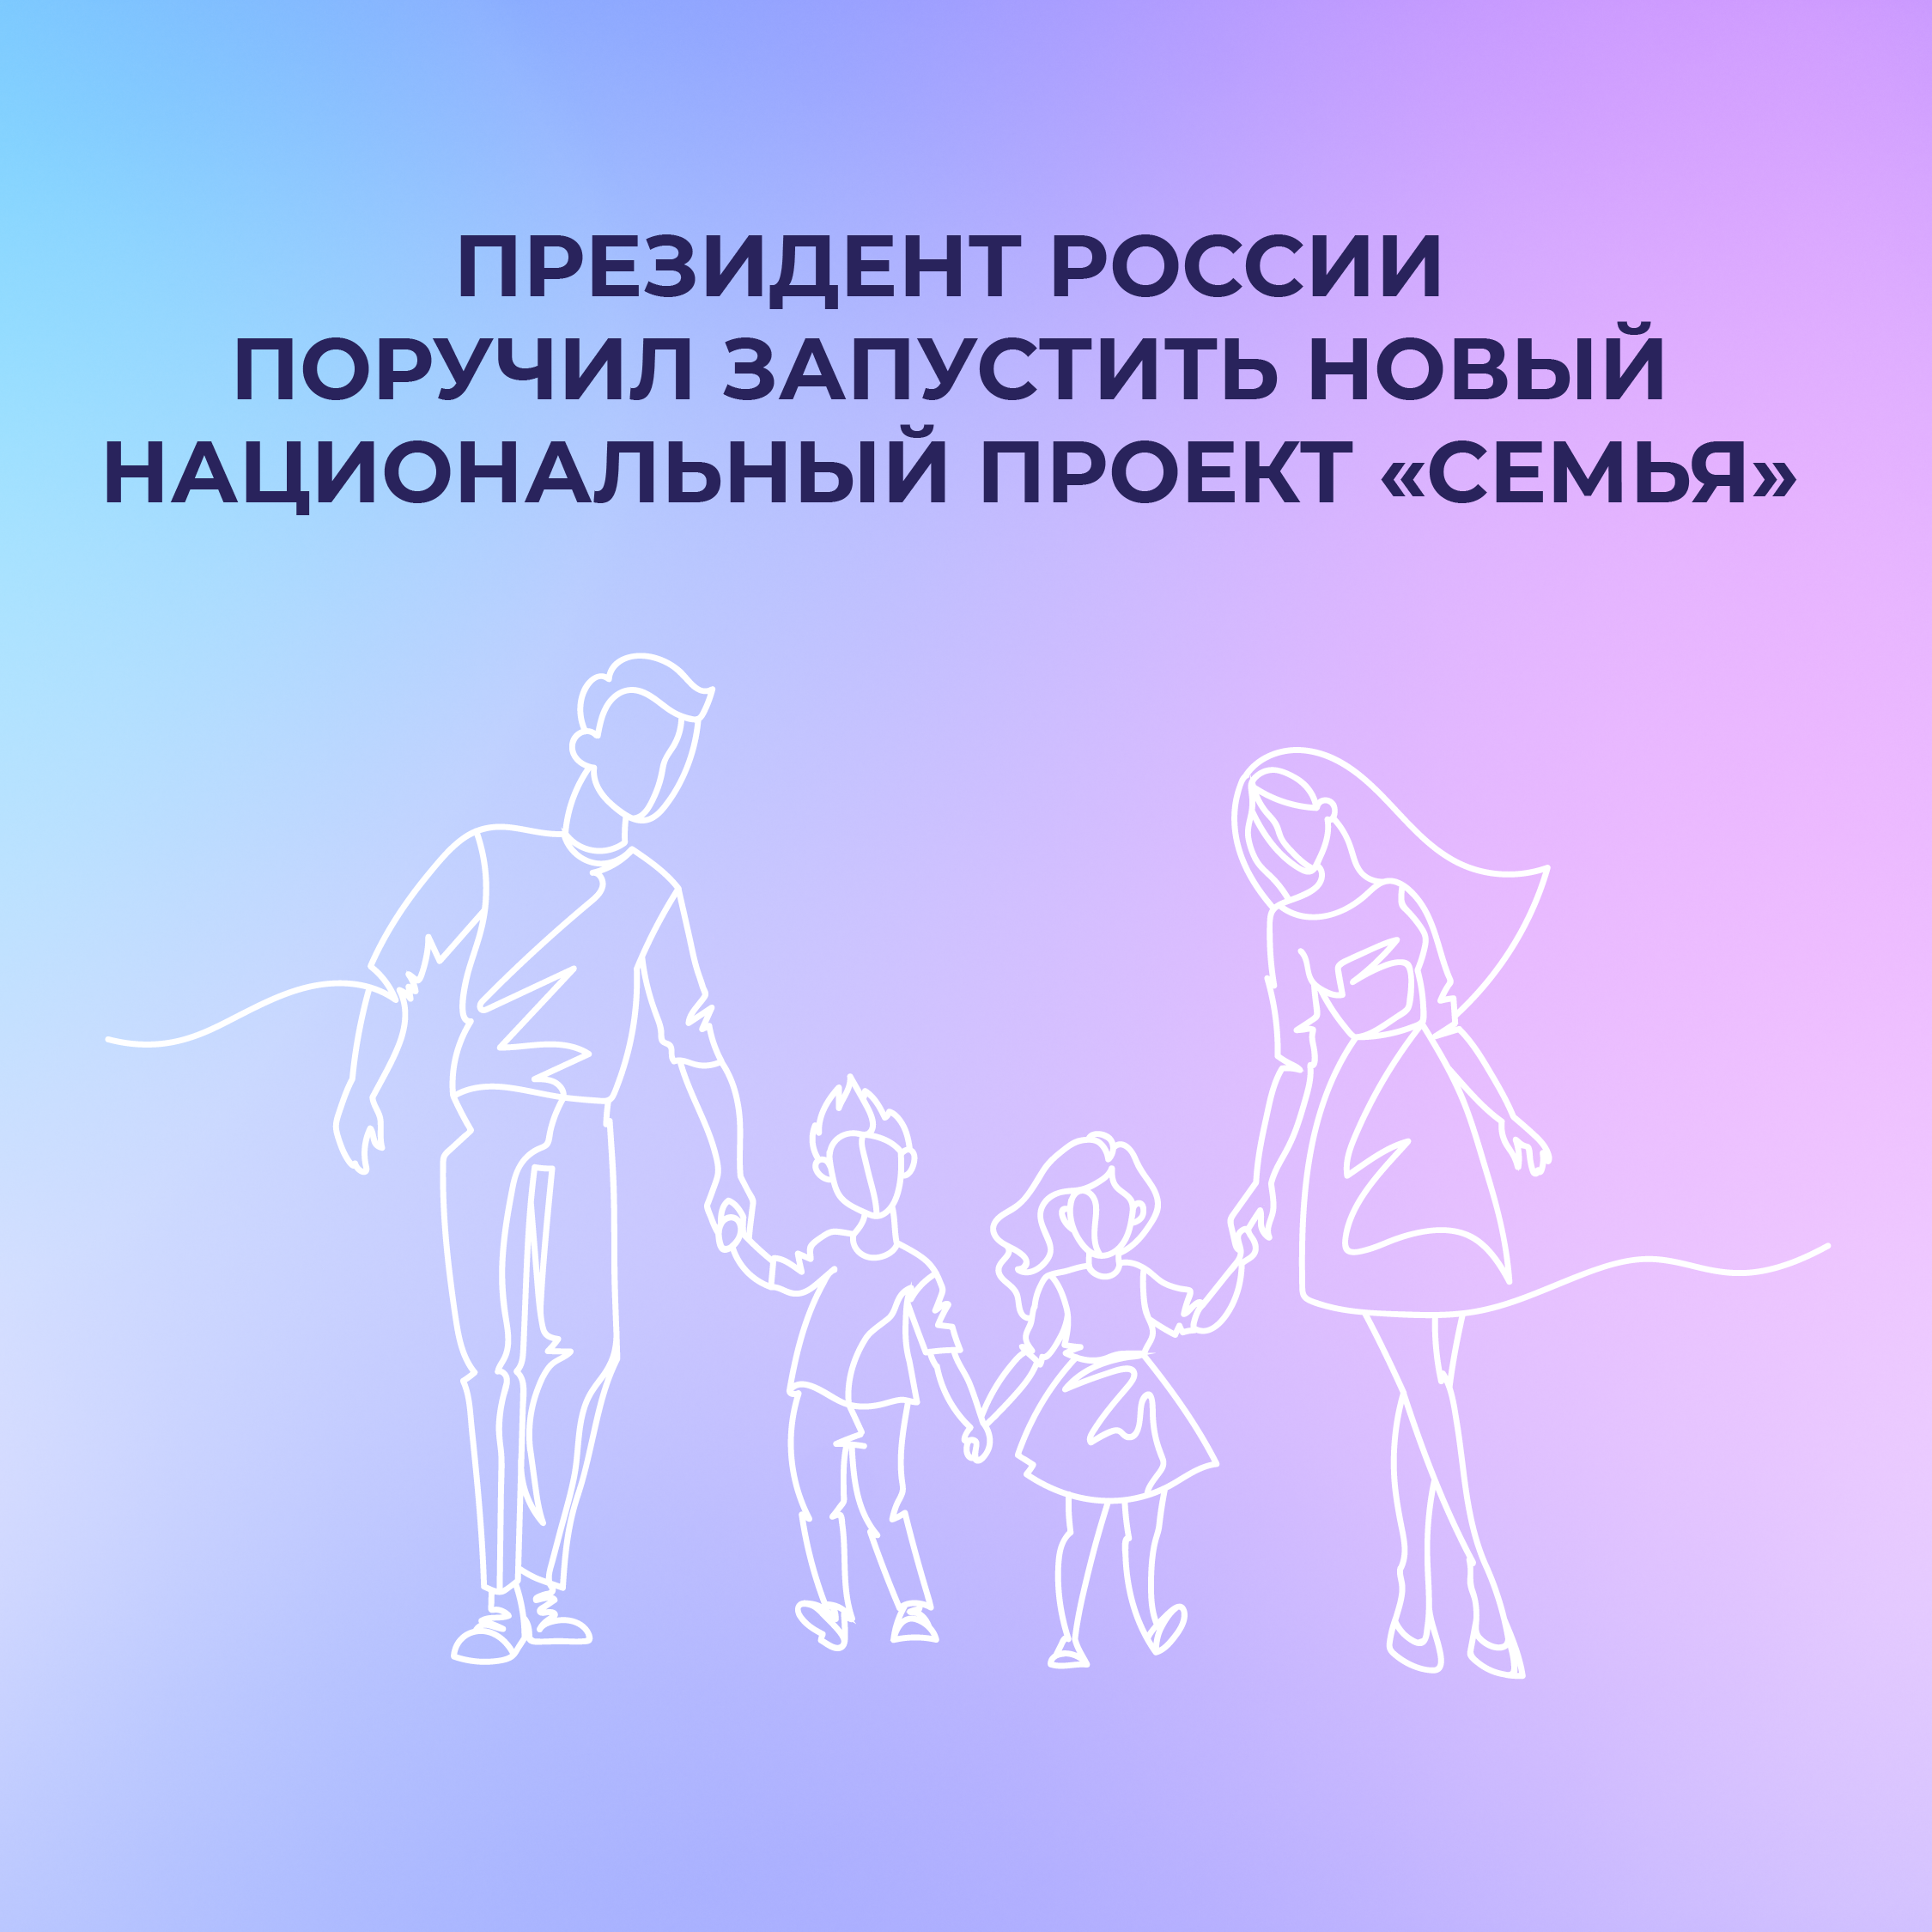 Президент анонсировал новый нацпроект «Семья».